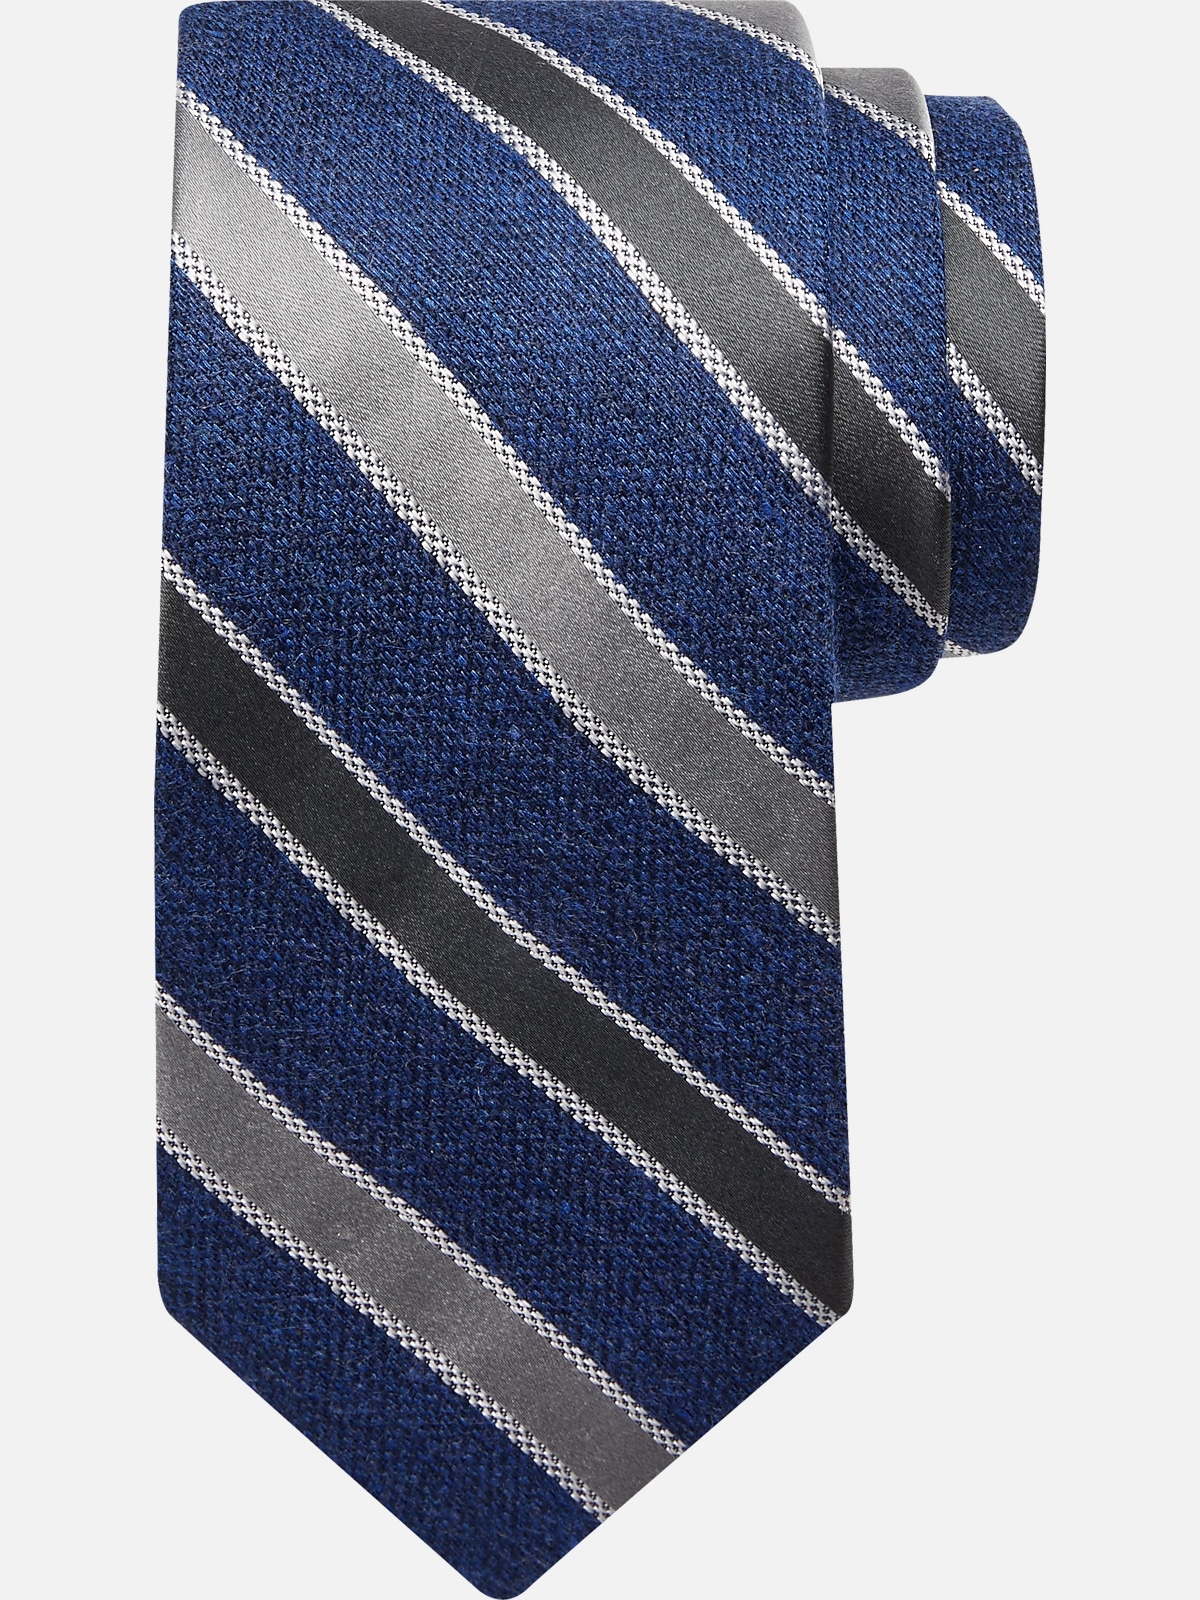 Joseph Abboud Narrow Stripe Tie | All Clearance $39.99| Men's Wearhouse